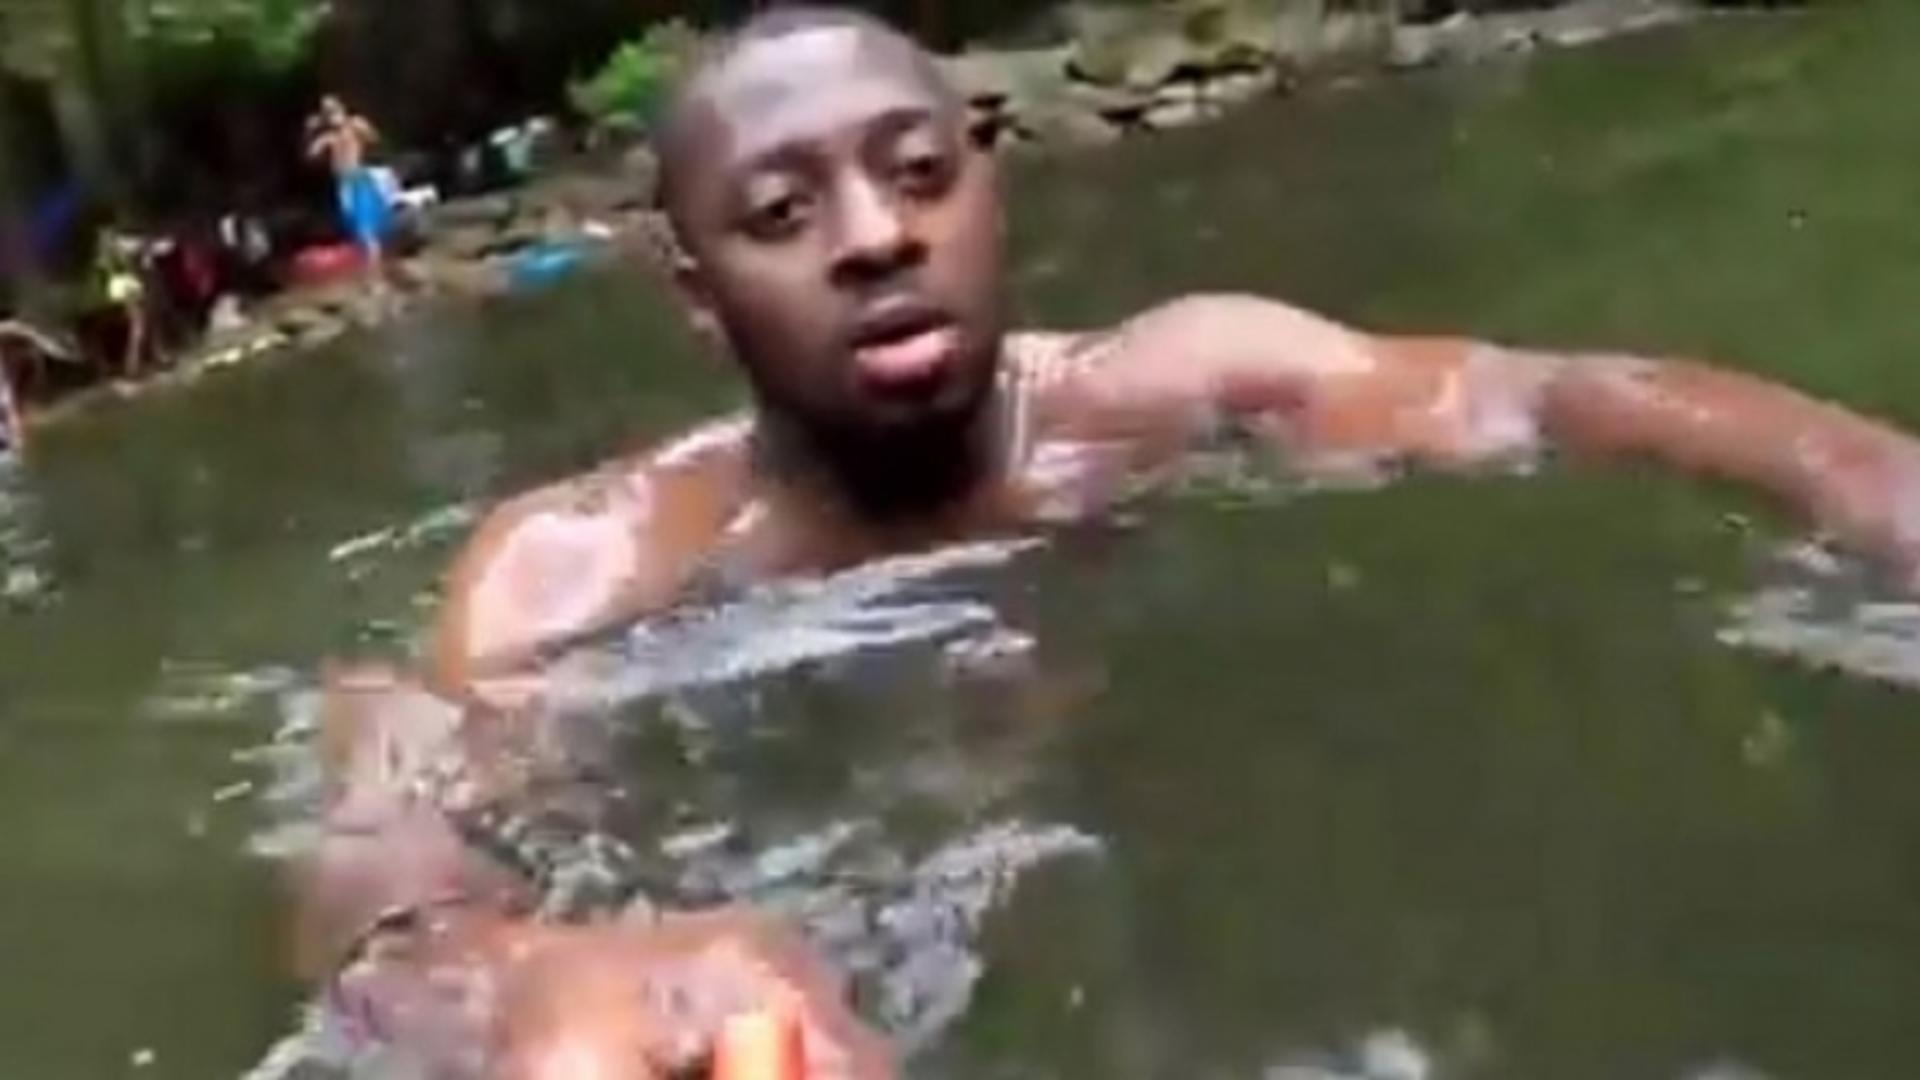 A găsit o cameră video în apă. A înghețat când a văzut imaginile: a privit moartea în ochi